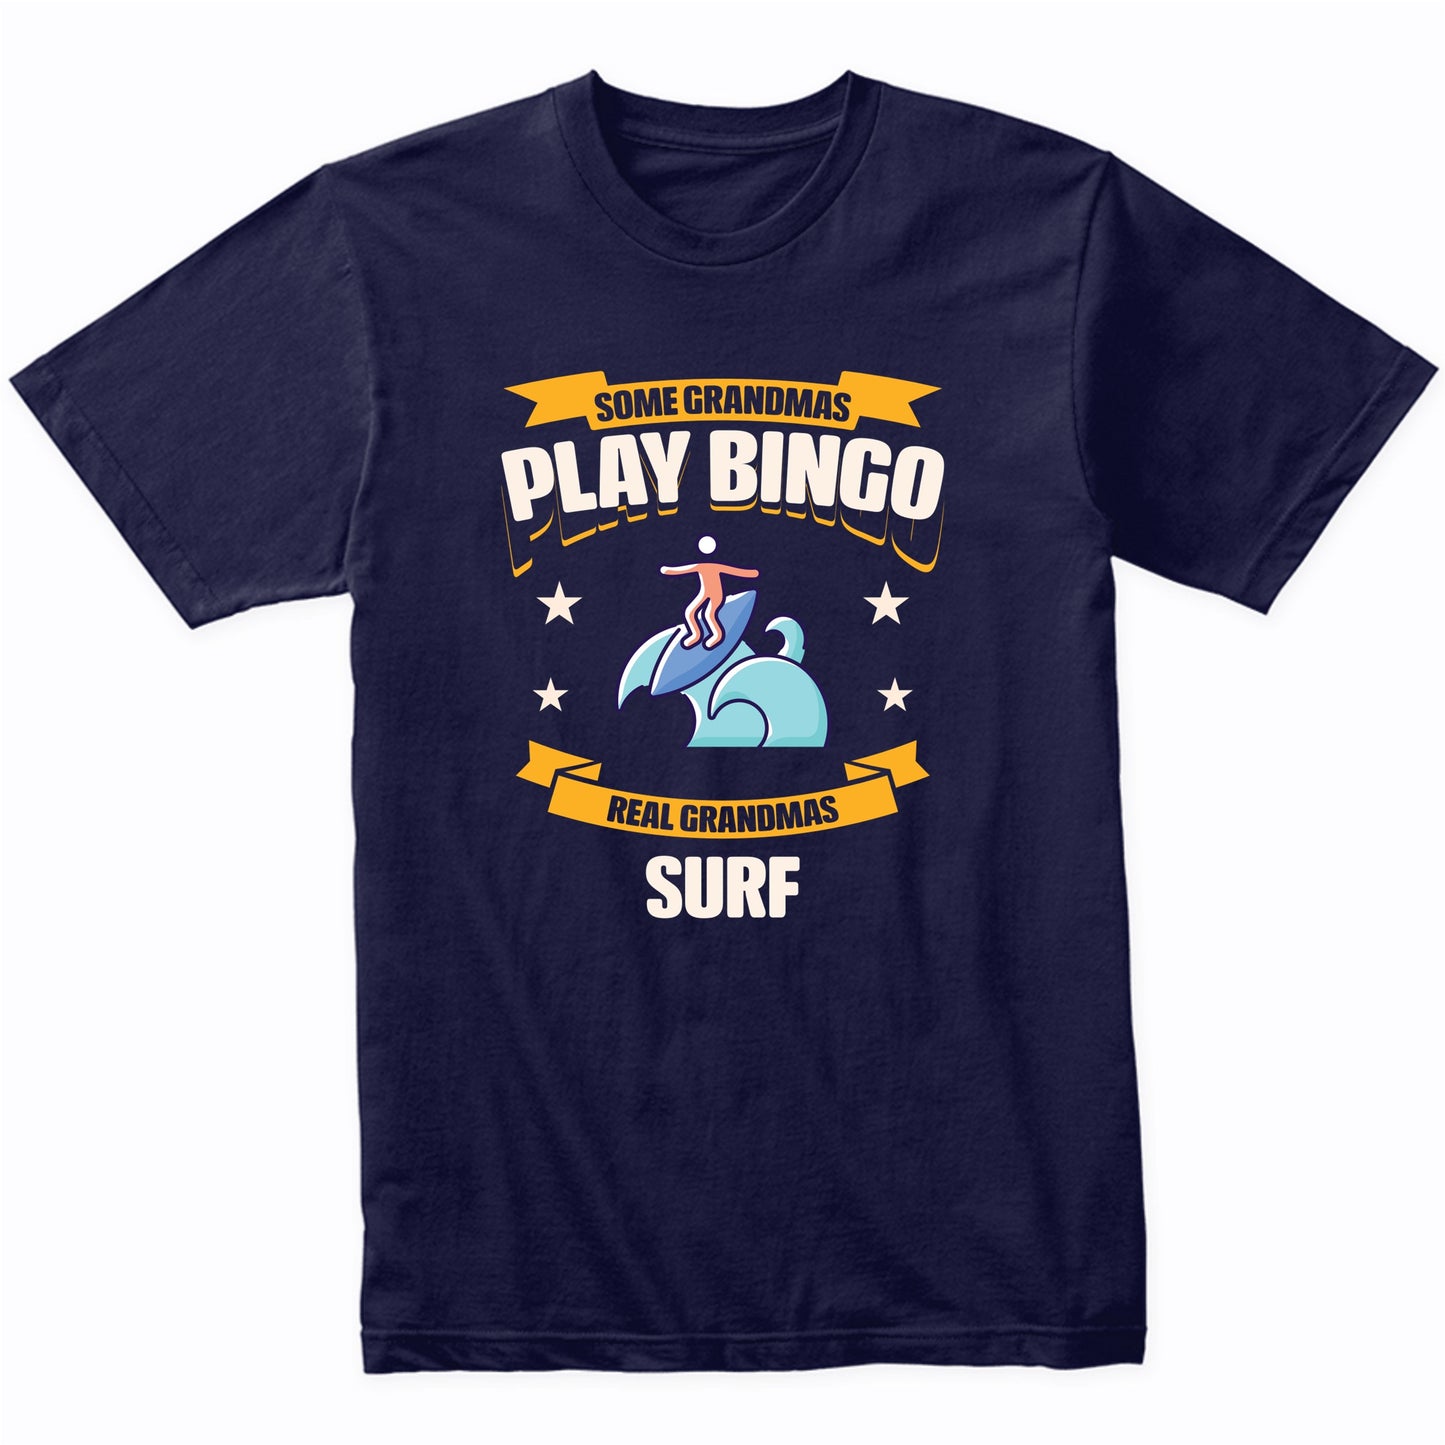 Some Grandmas Play Bingo Real Grandmas Surf Funny T-Shirt